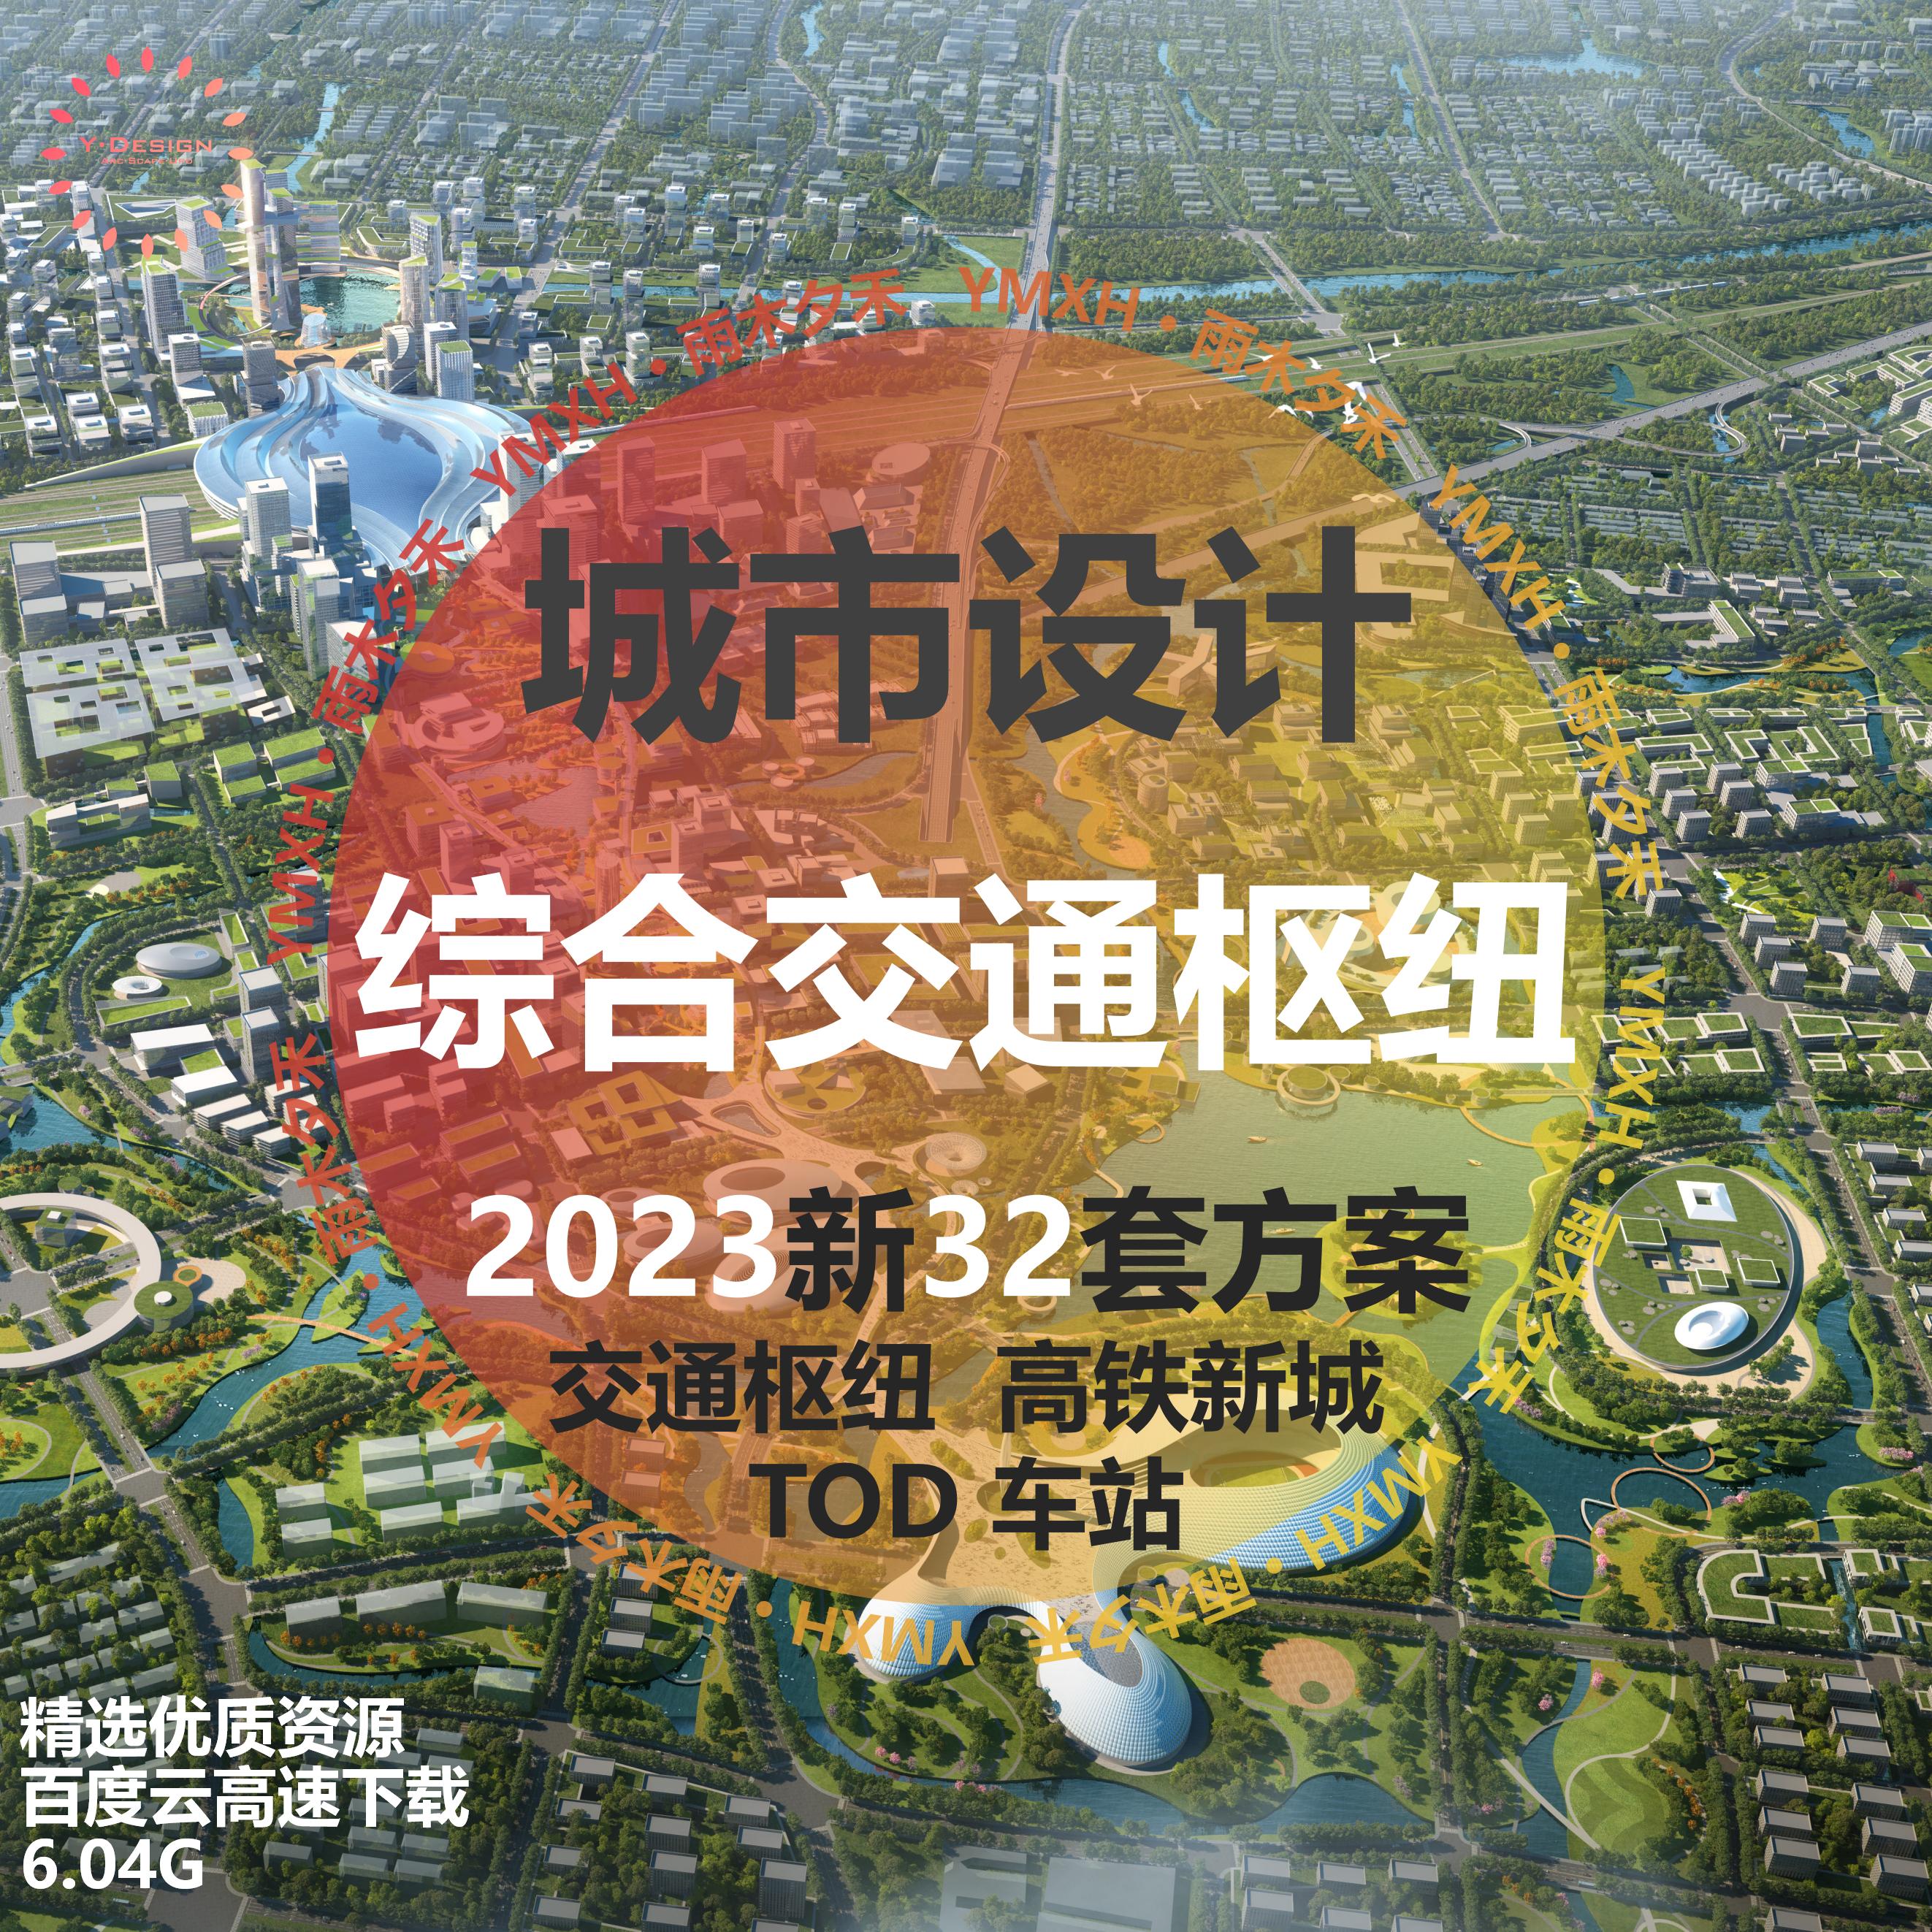 2023新综合交通枢纽TOD车站城市设计文本规划方案深规院AECOM同济